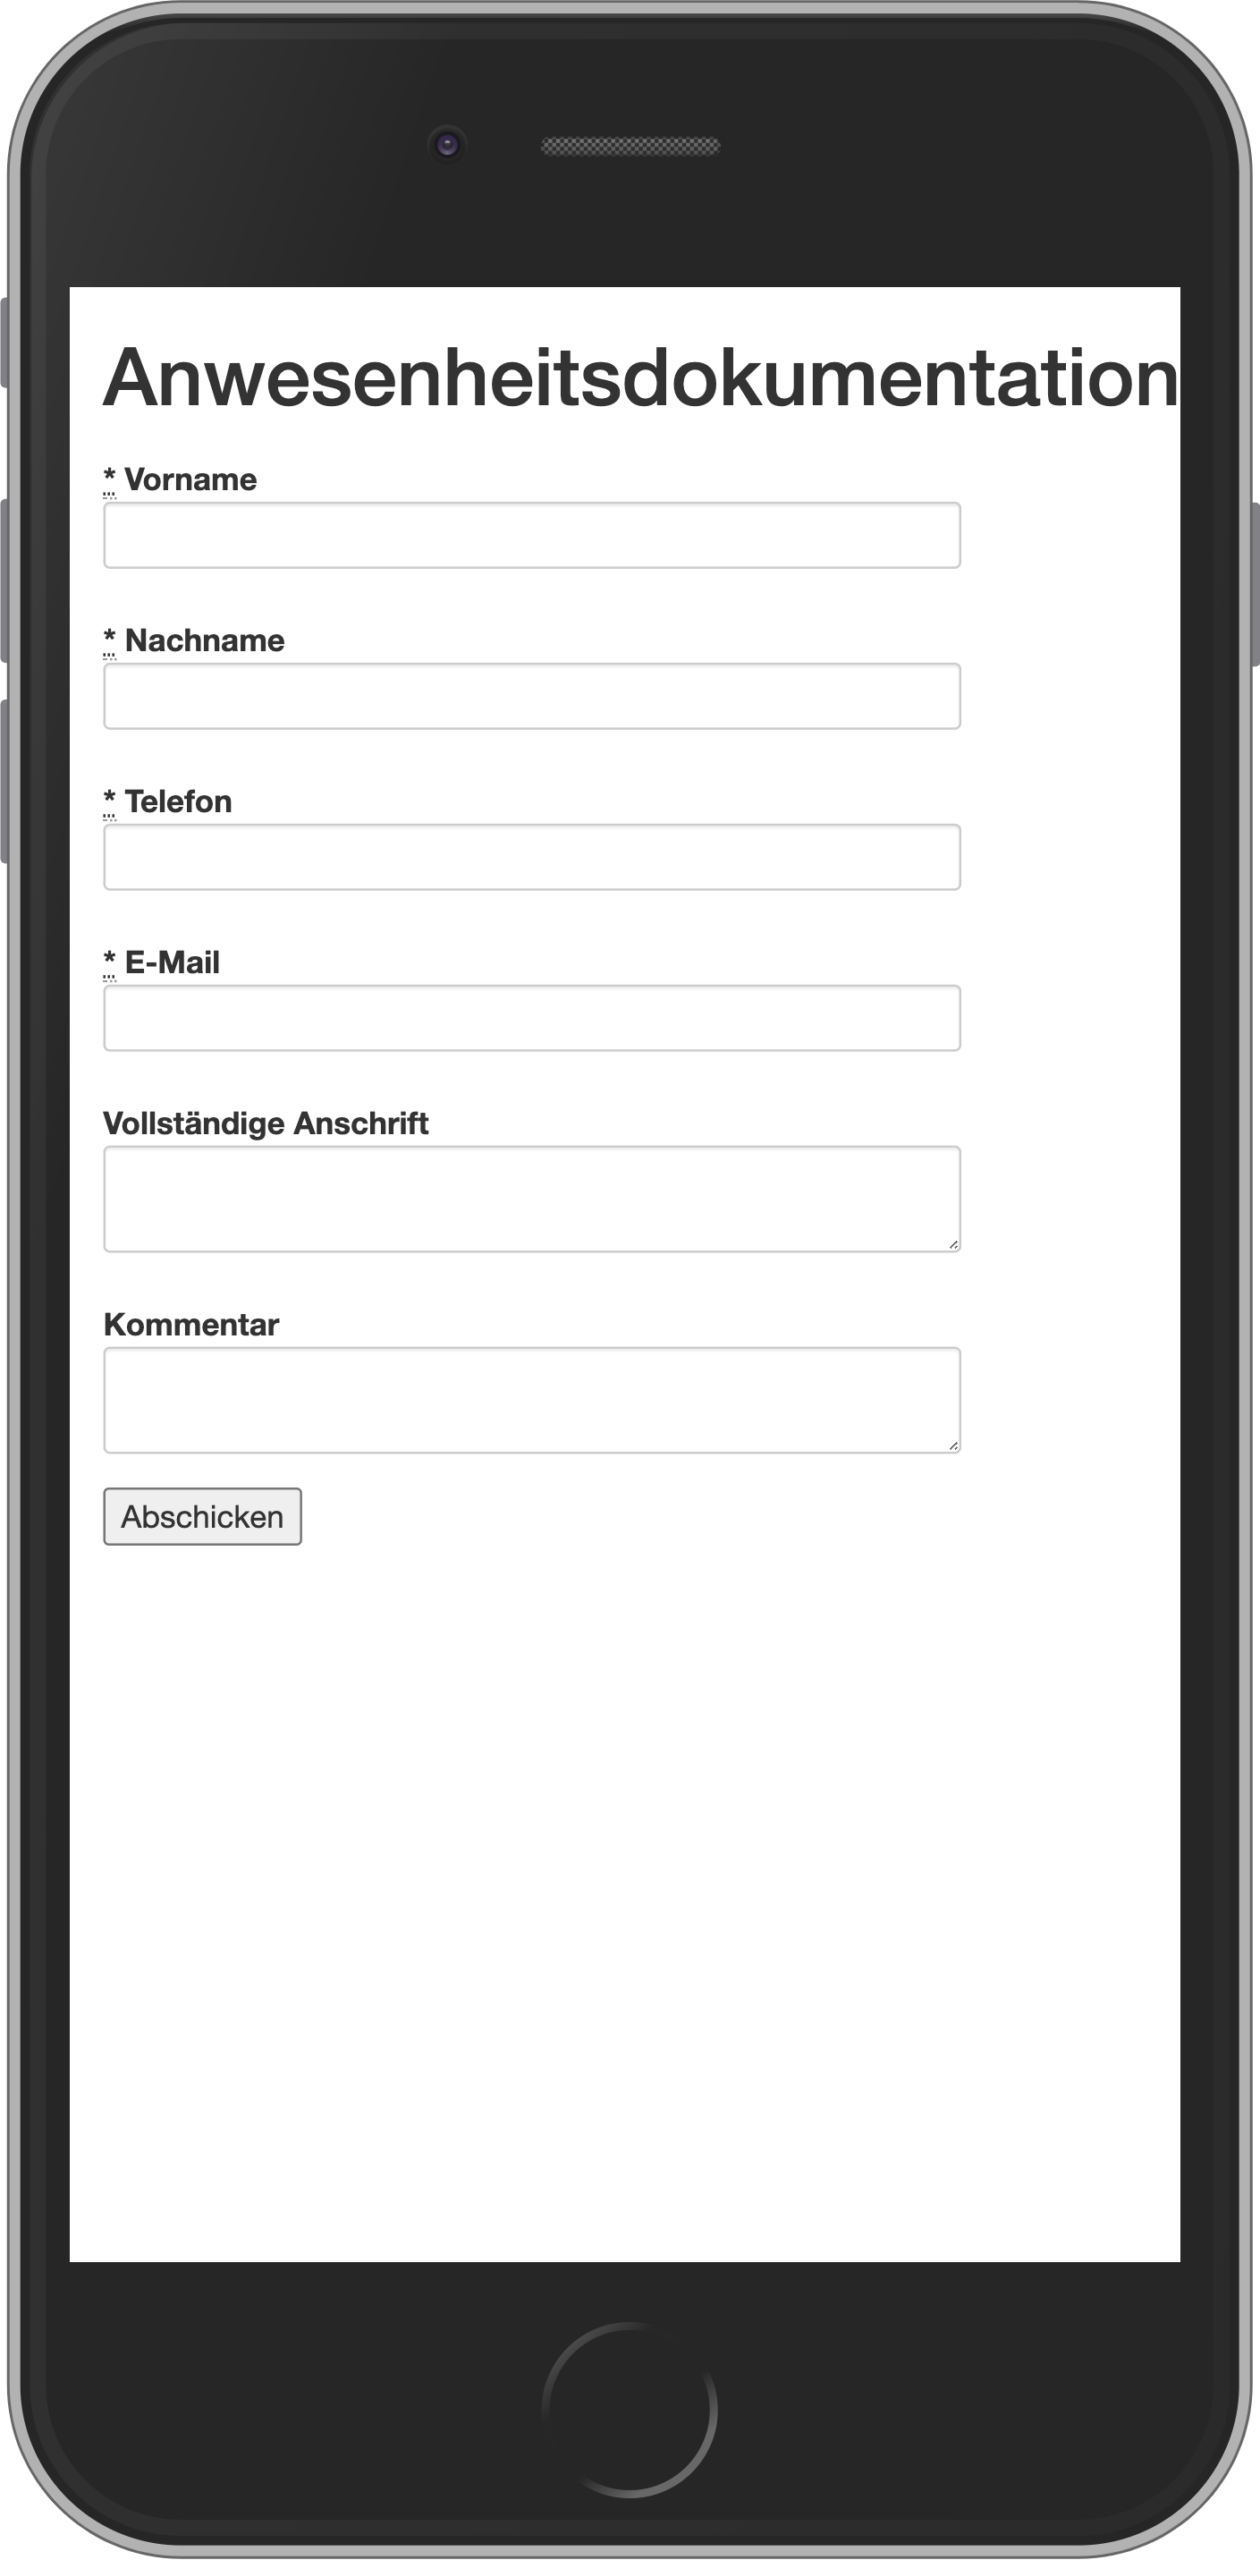 Teilnehmererfassung auf BYOD per Scan eines QR-Codes